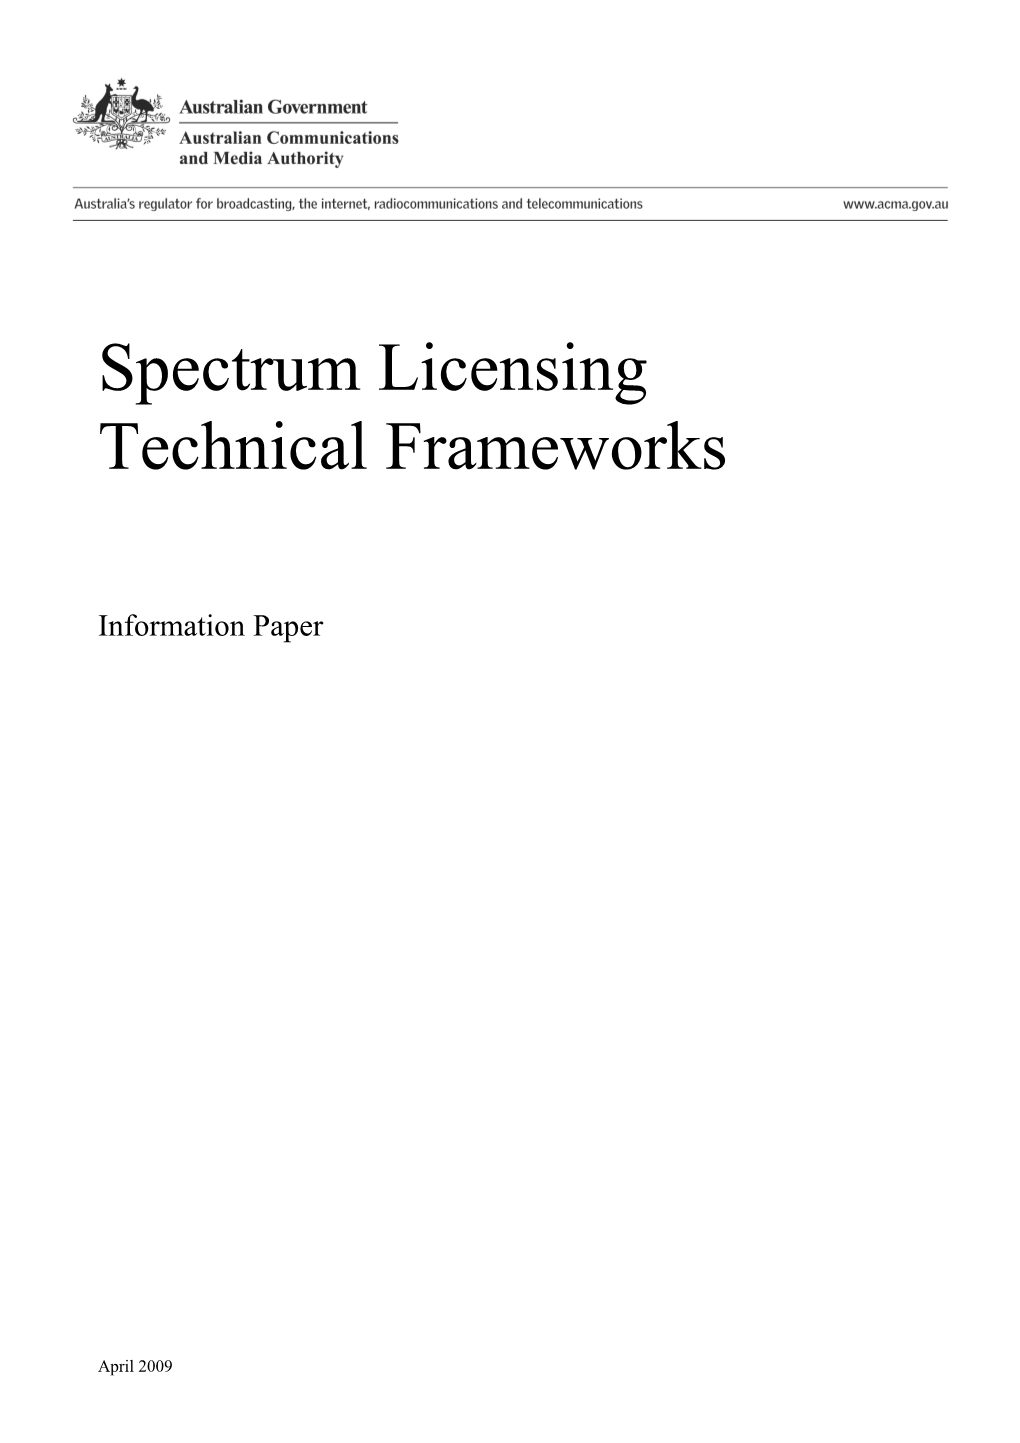 Spectrum Licensing Technical Frameworks - Information Paper